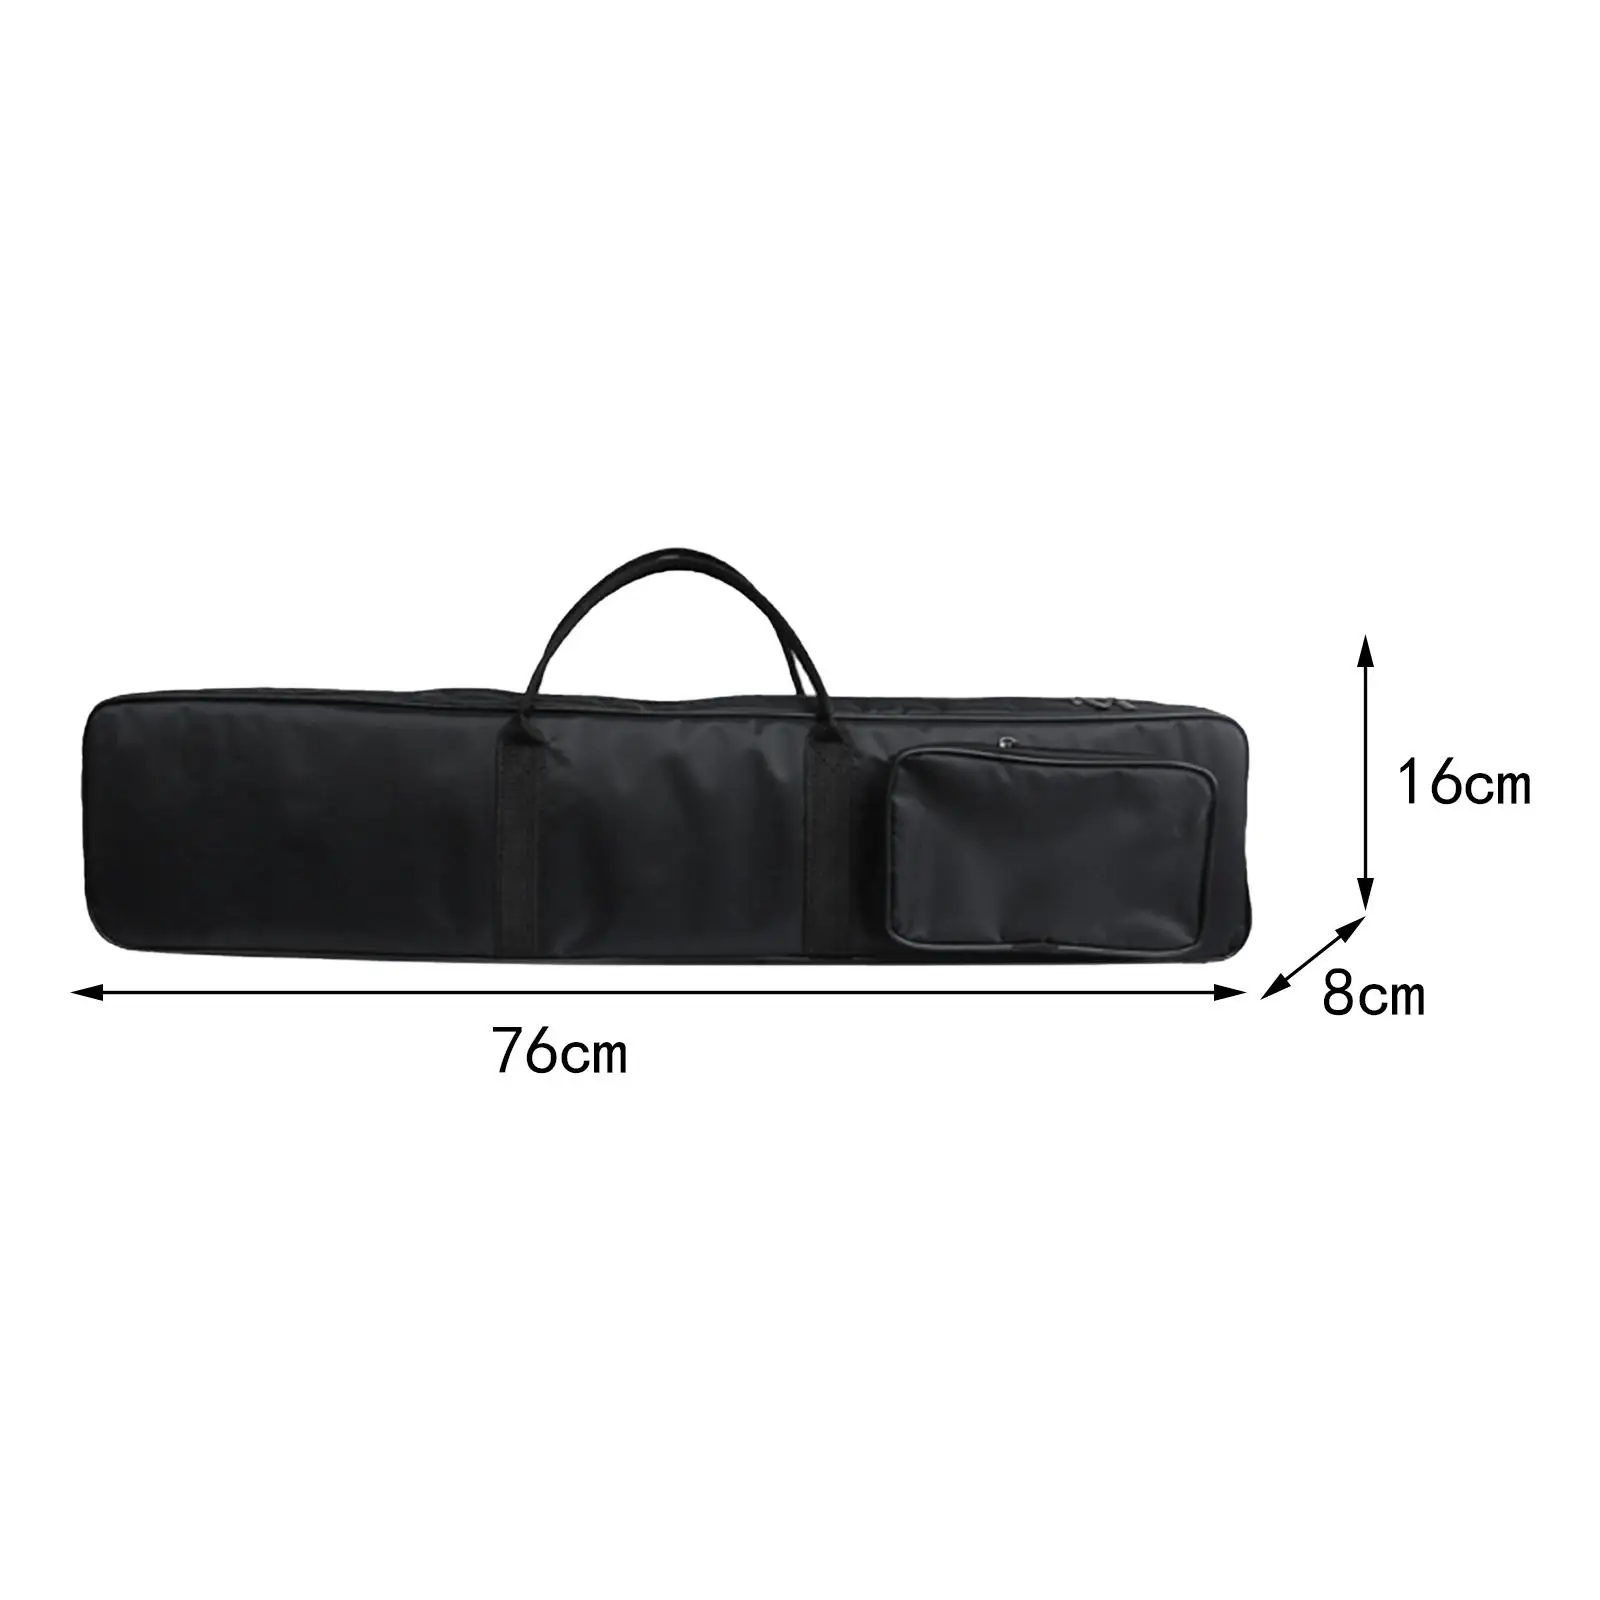 

Flute Storage Bag Lightweight Adjustable Shoulder Strap Gig Bag Flute Accessories Can Hold 7 Flutes Travel Carry Case for Flute